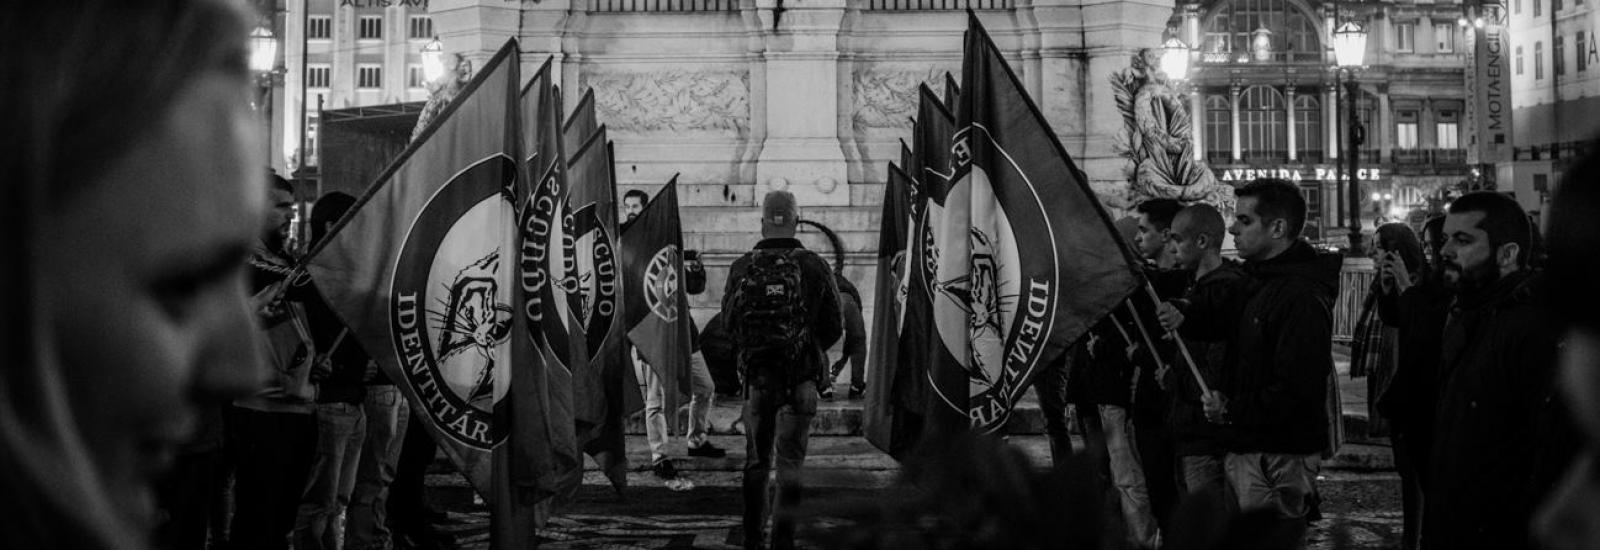 Parada neofascista do Escudo Identitário